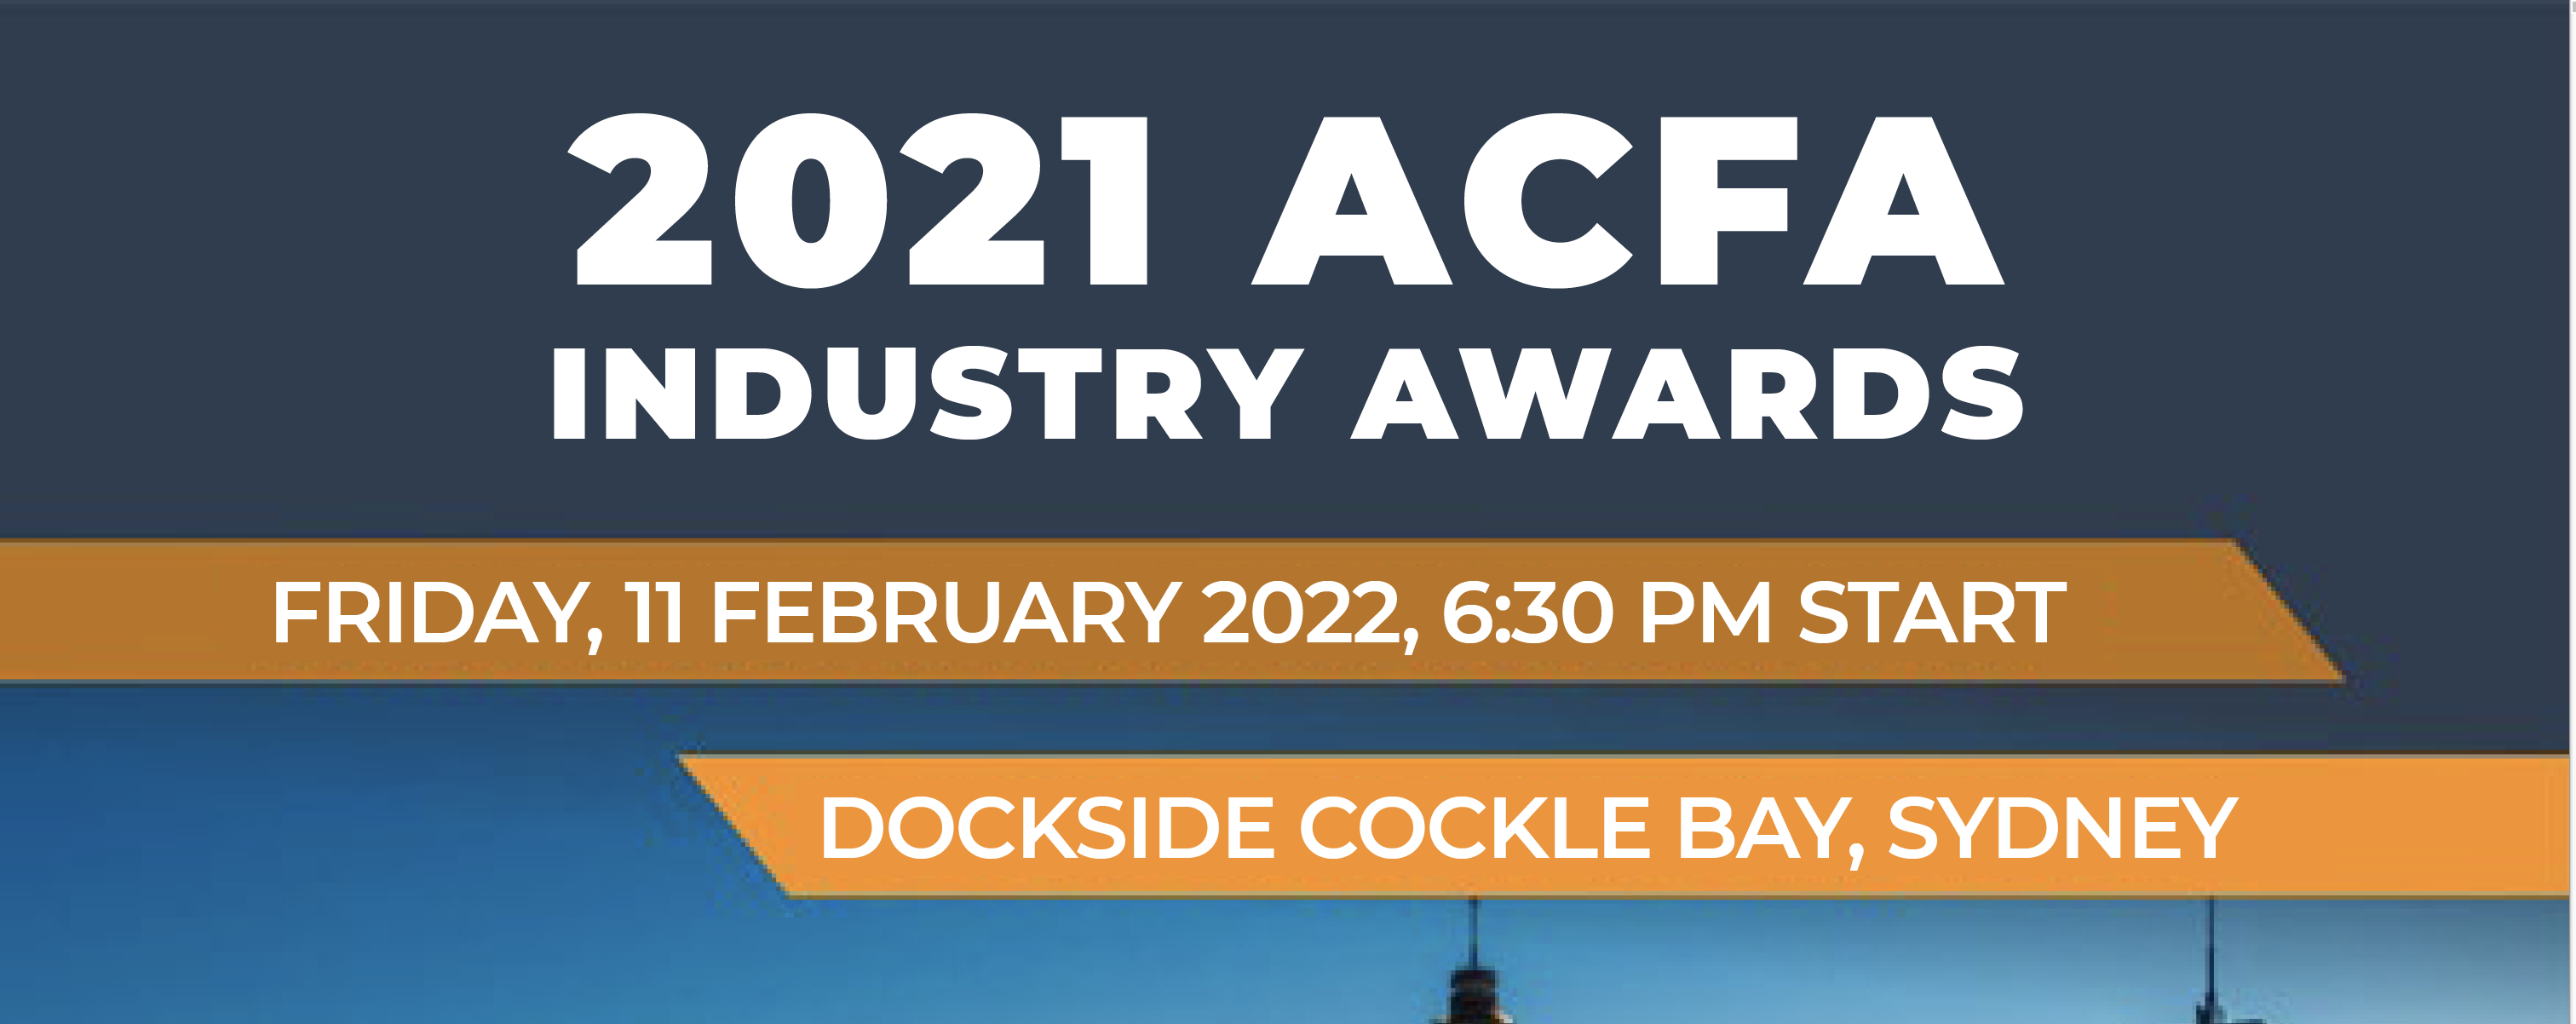 ACFA Industry Awards 2021